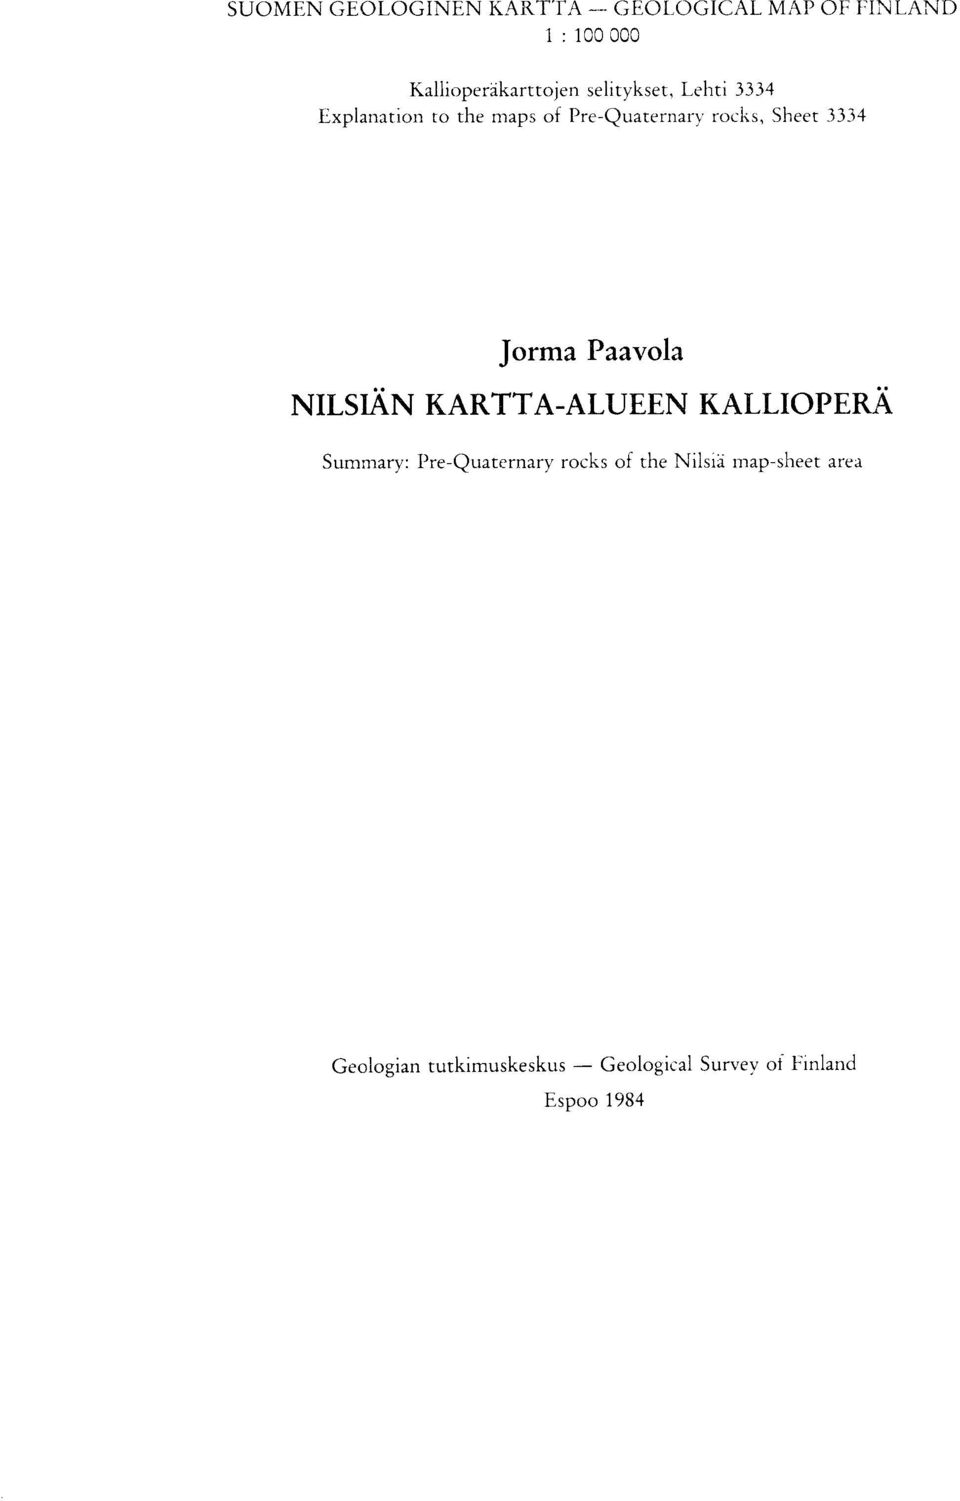 Jorma Paavola NILSIAN KARTTA-ALUEEN KALLIOPERA Summary : Pre-Quaternary rocks of the